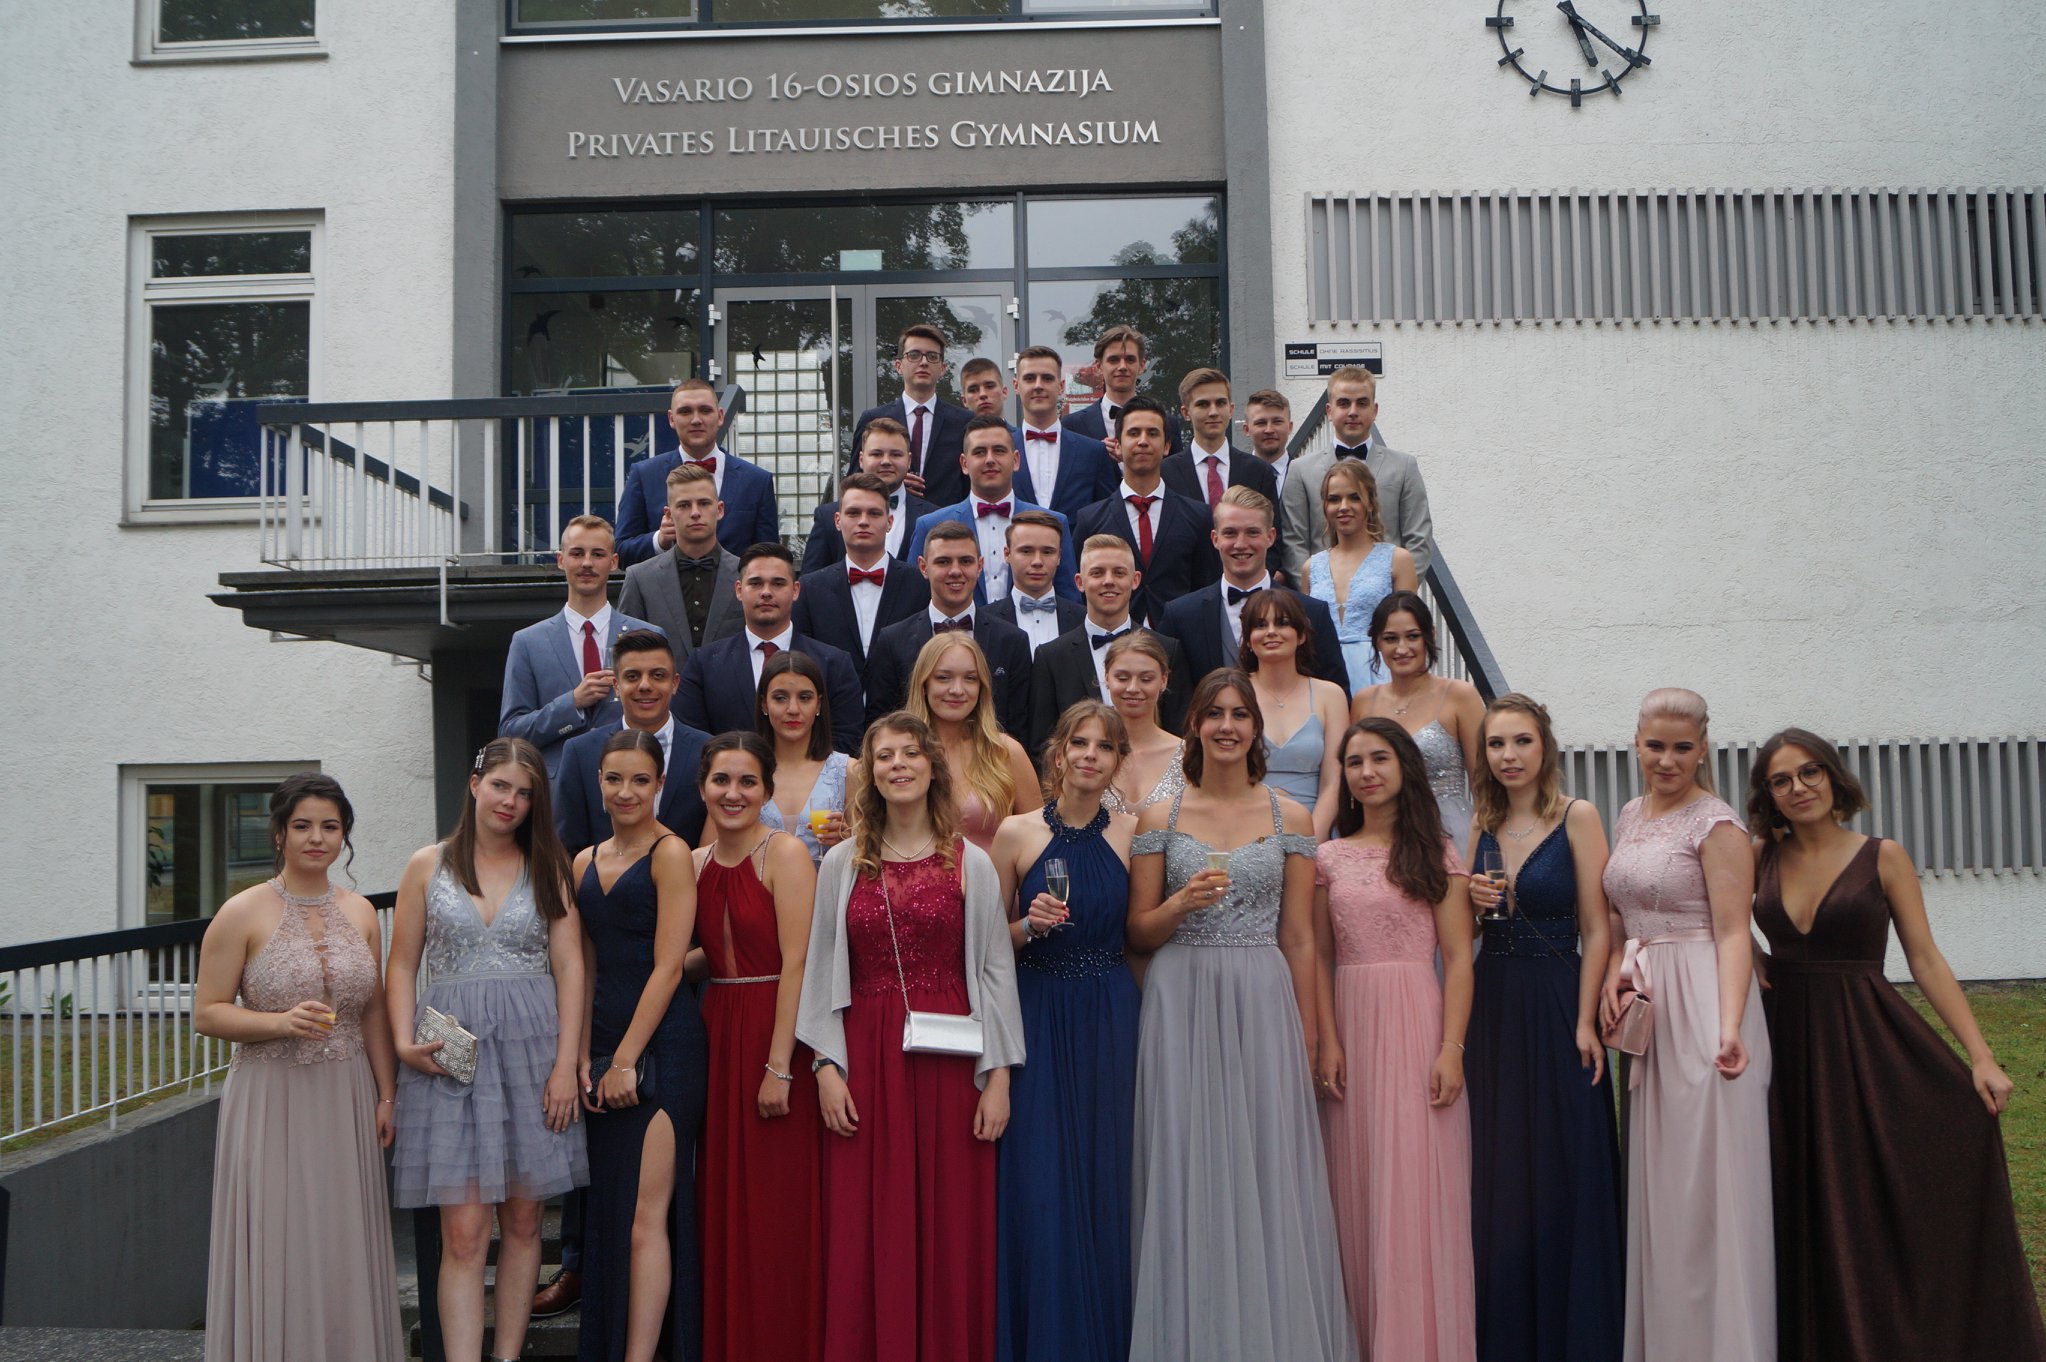 Abitur 2019 – Akademische Feier in der Herz-Jesu-Kirche in Hüttenfeld